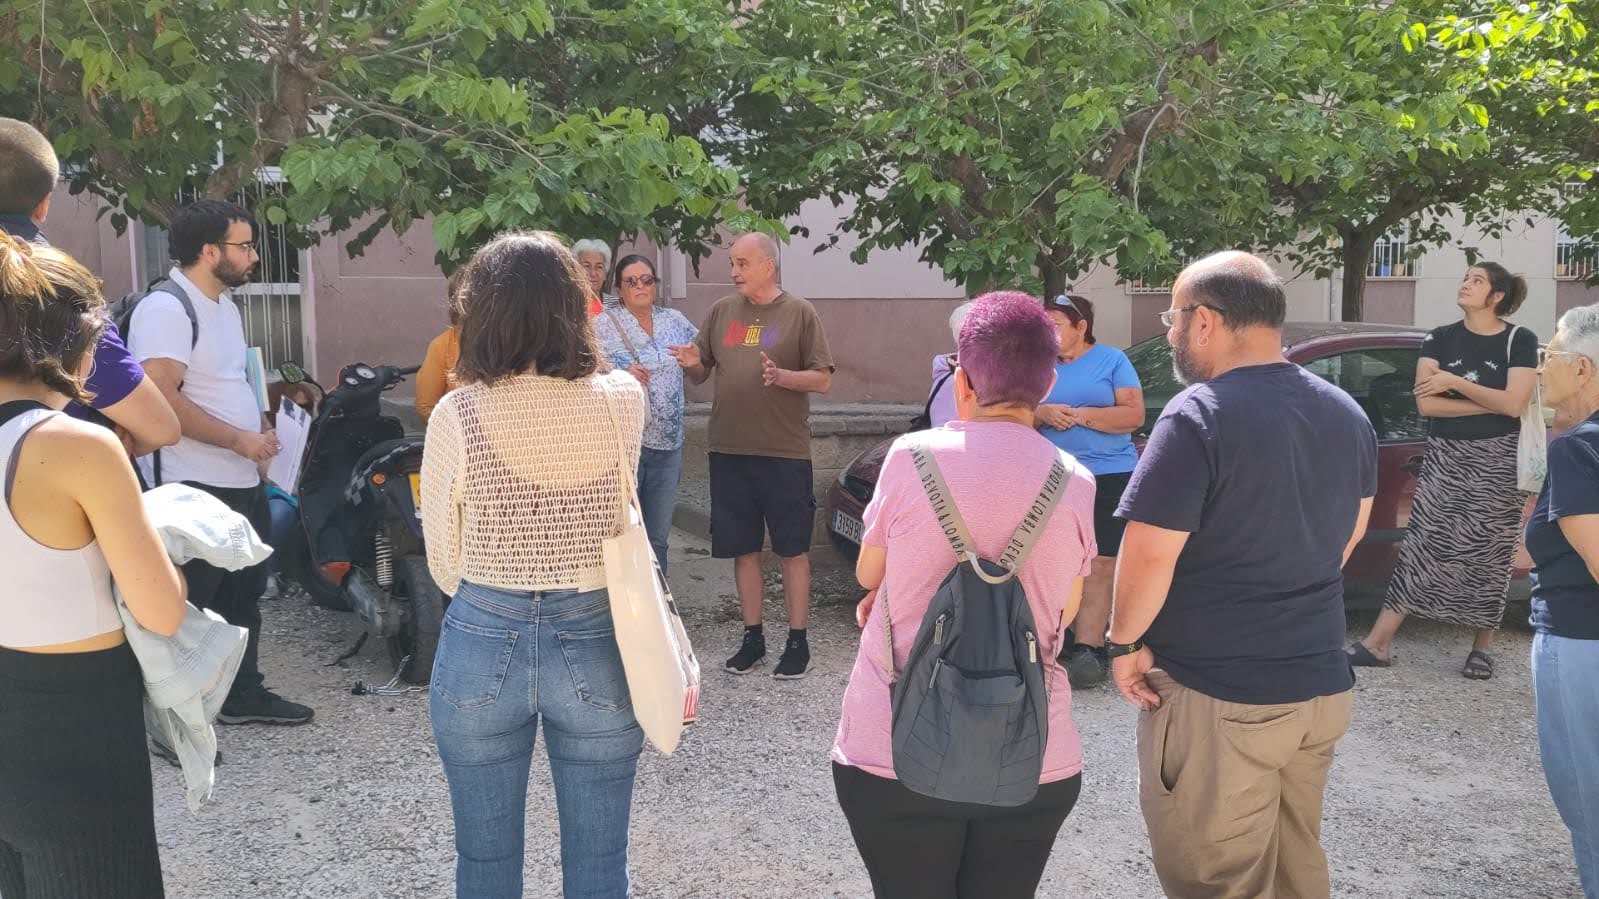 La Comunalitat Urbana de Tarragona organitza una Passejada per la Memòria al barri de Sant Salvador